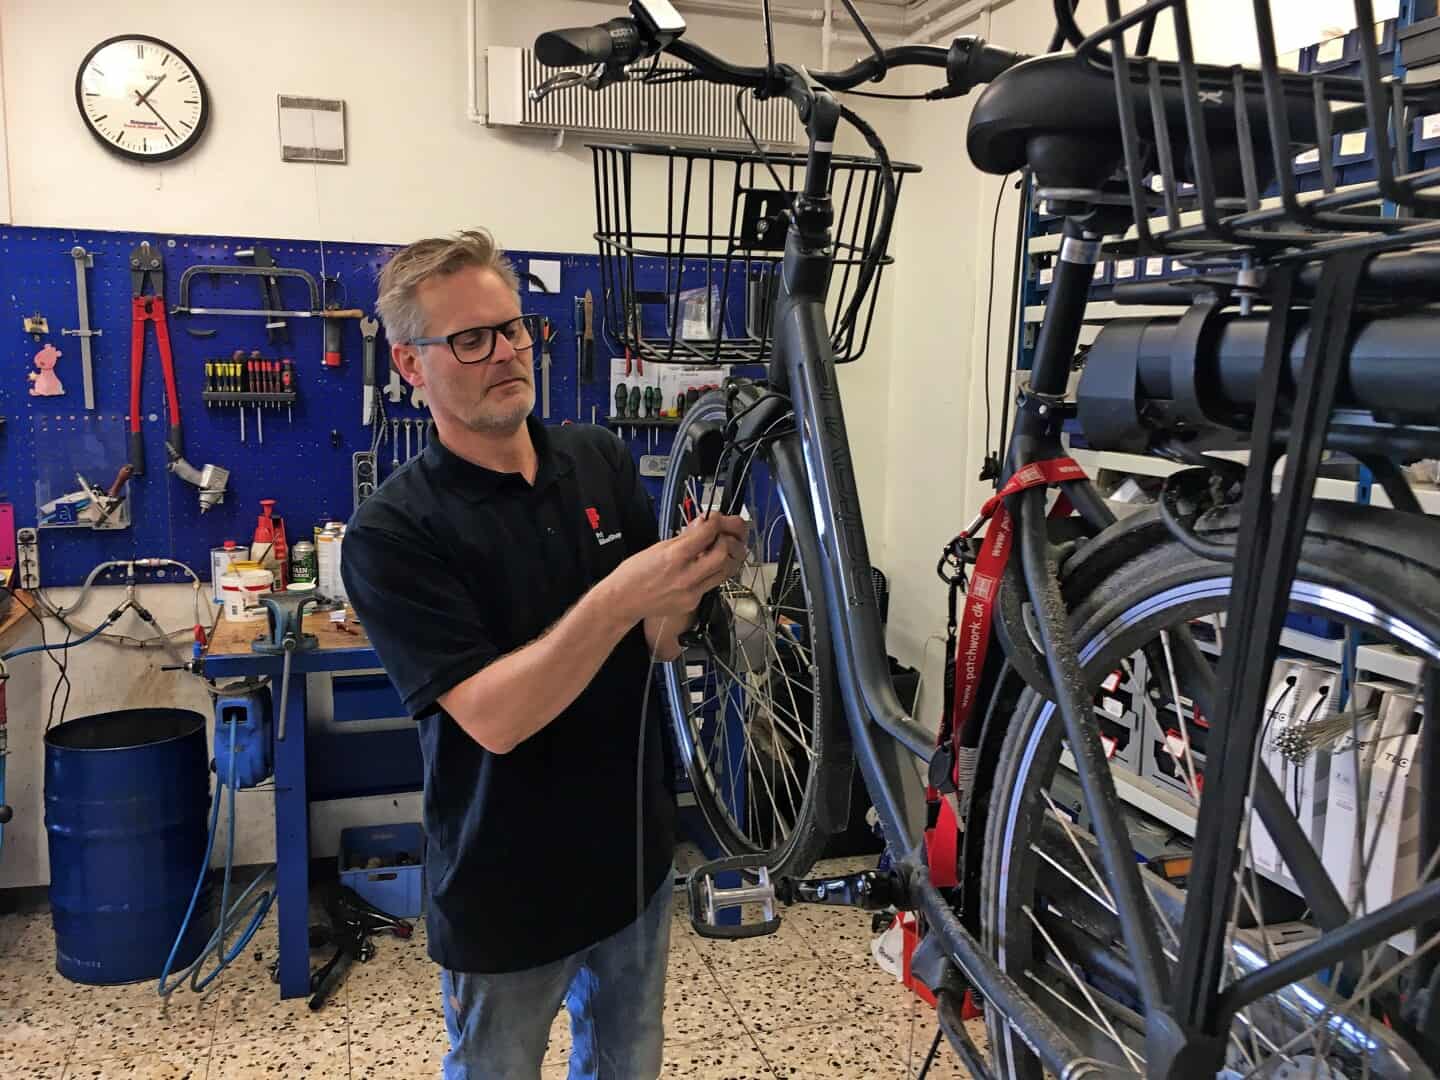 Cykelforretning i Flytter ind hovedgaden i Assens | ugeavisen.dk